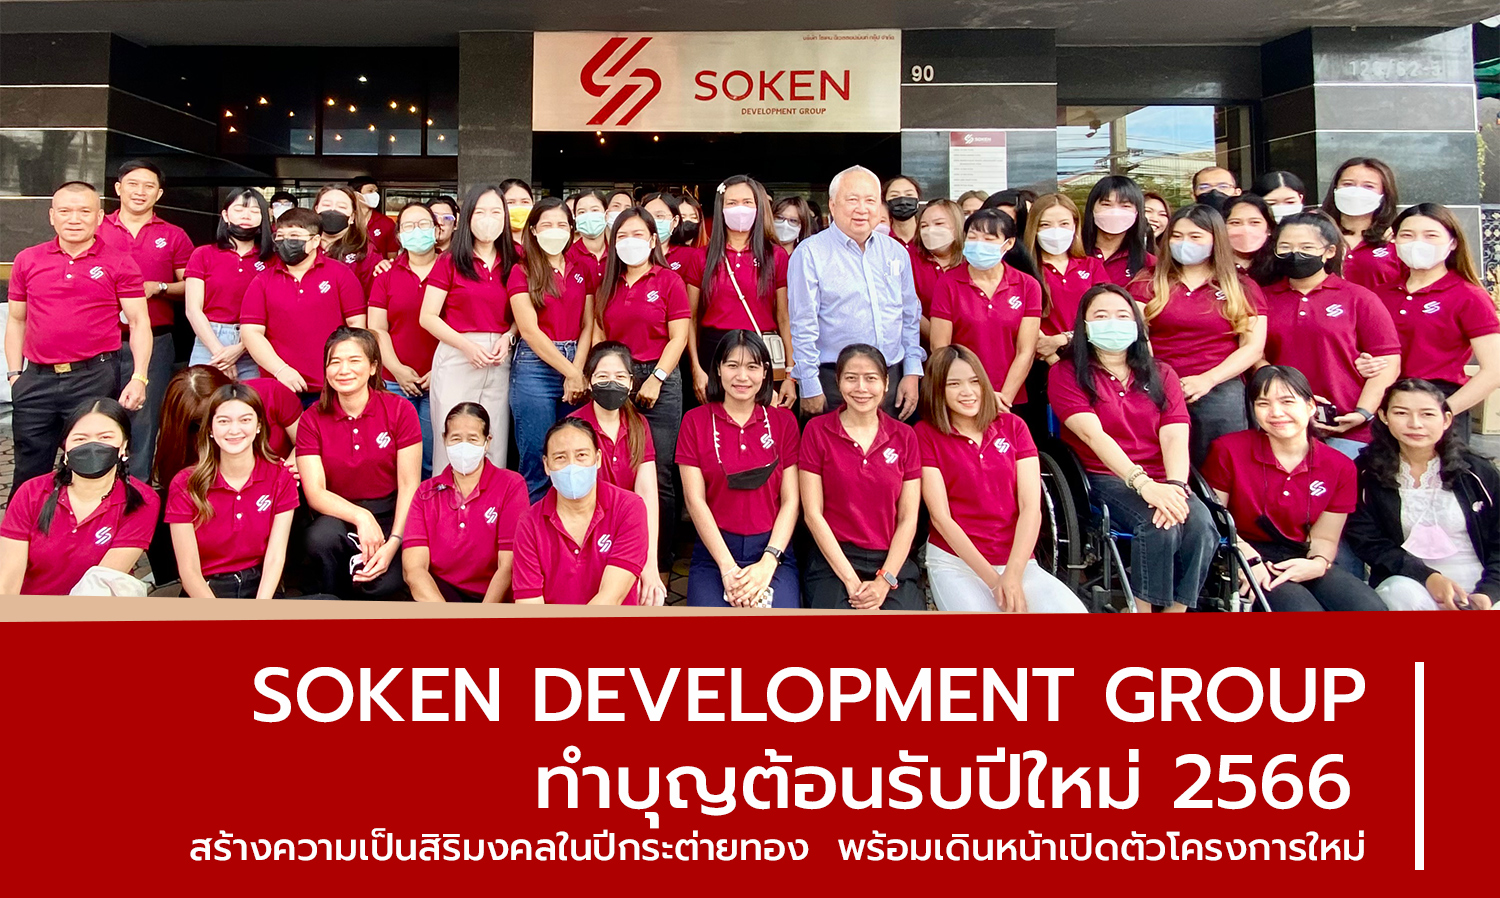 Soken Development Group ทำบุญต้อนรับปีใหม่ 2566 สร้างความเป็นสิริมงคลในปีกระต่ายทอง “พร้อมเดินหน้าเปิดตัวโครงการใหม่”